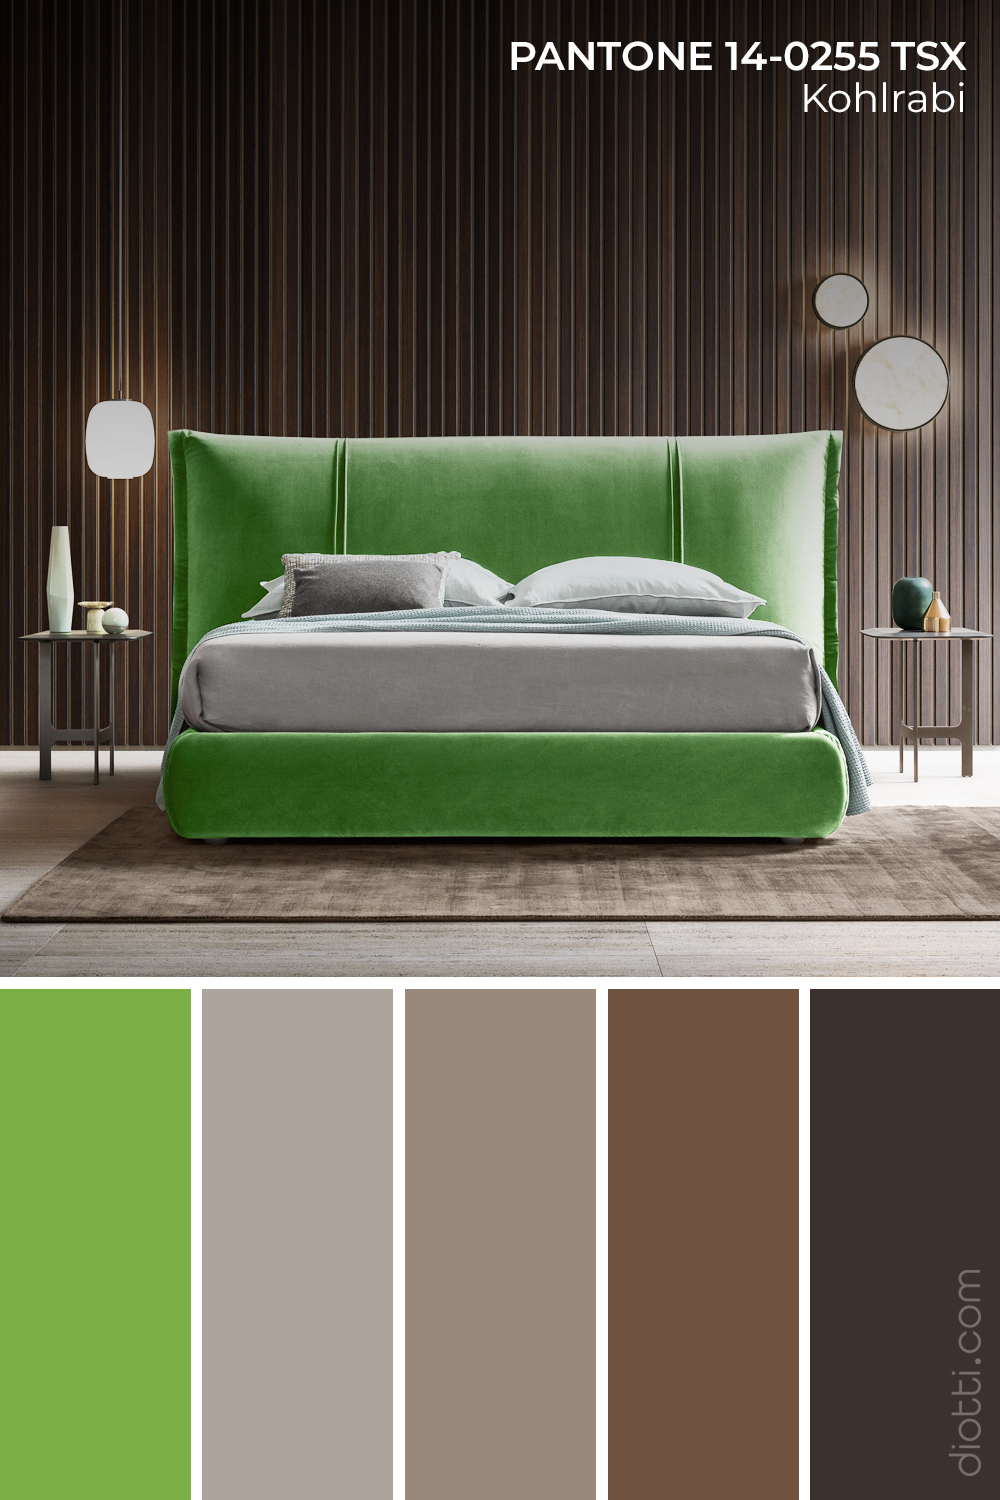 Palette colori per camera da letto originale e particolare in verde, grigio e marrone scuro.